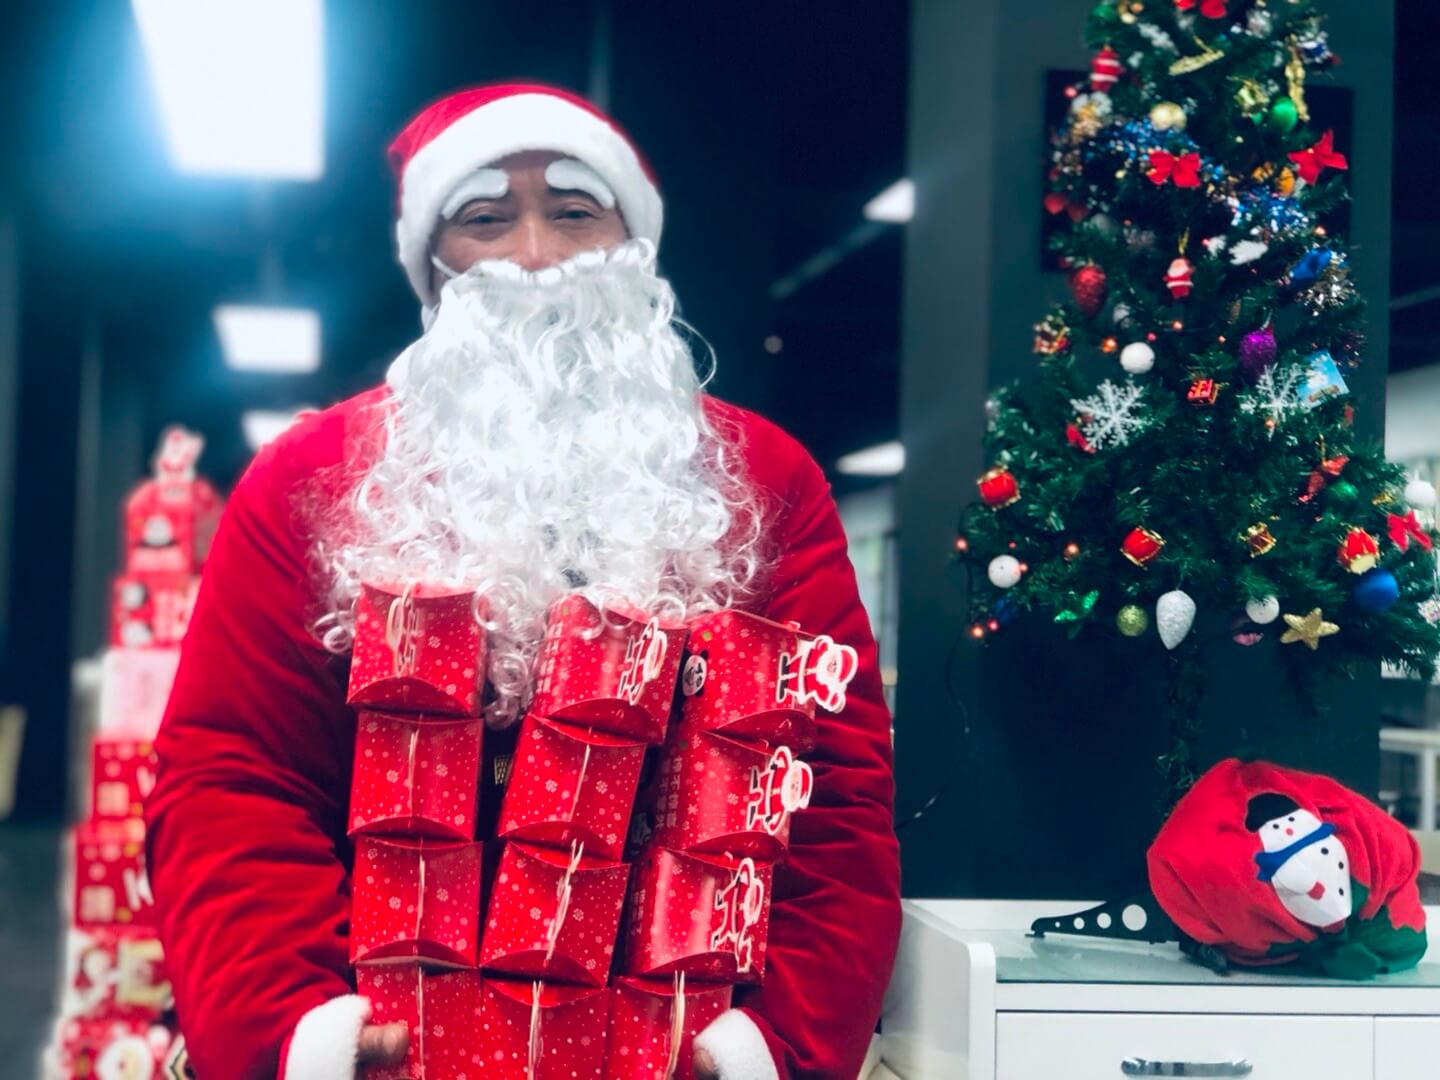 Santa gives gifts to enterprises